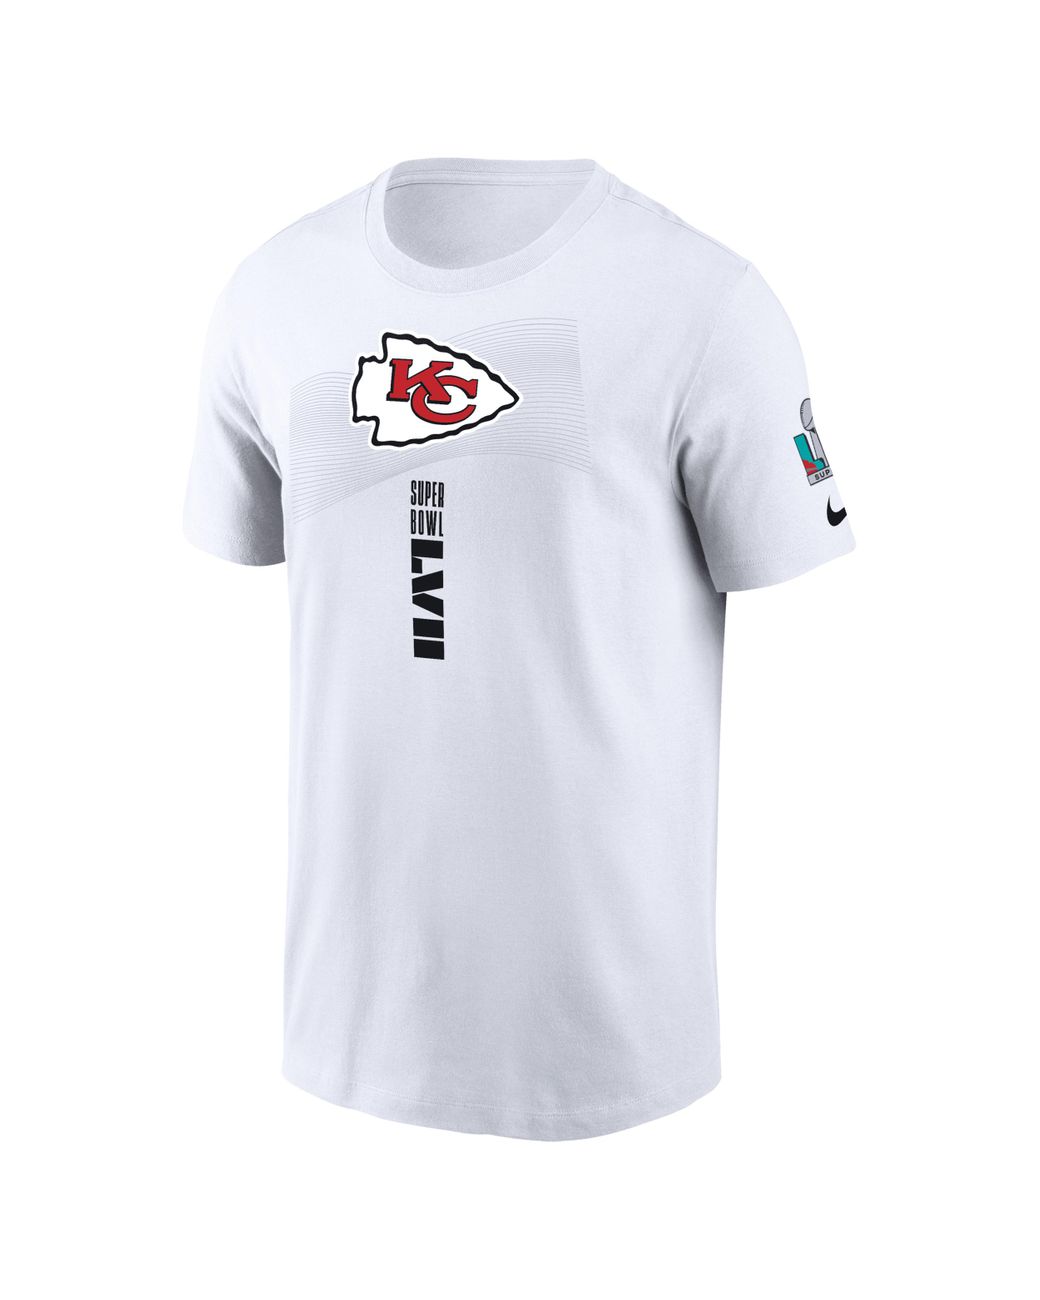 Nike Super Bowl Lvii (nfl Kansas City Chiefs) T-shirt In White, for Men ...